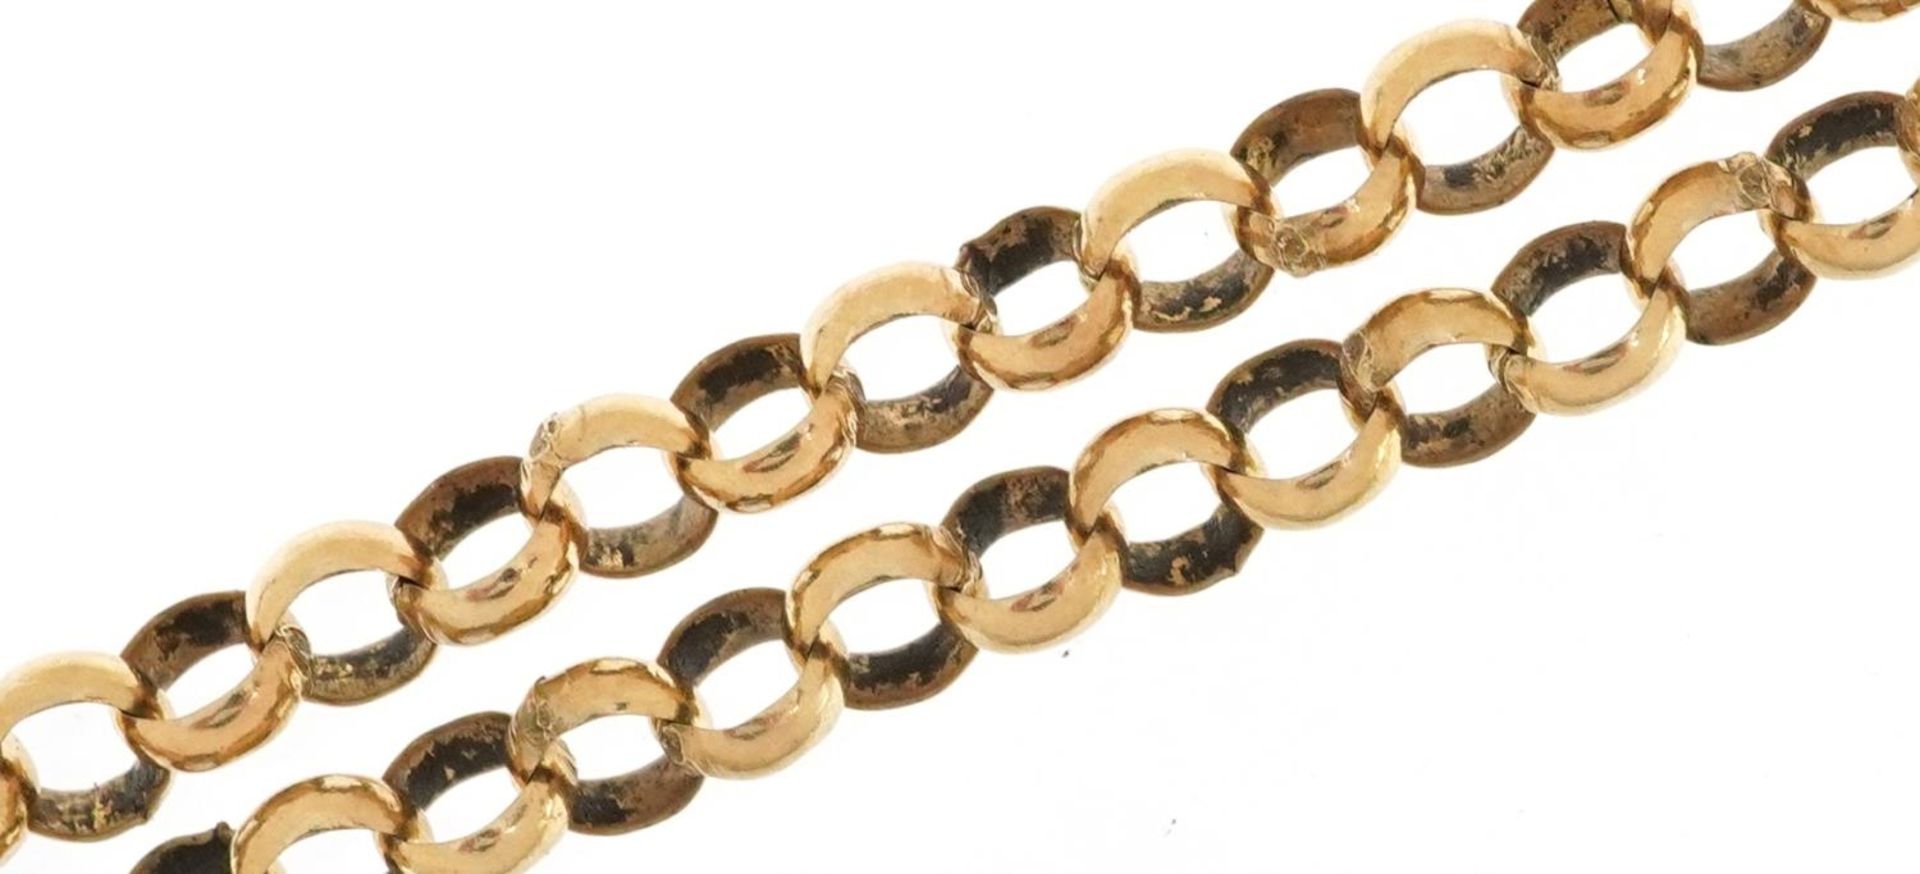 9ct gold Belcher link necklace, 62cm in length, 23.8g